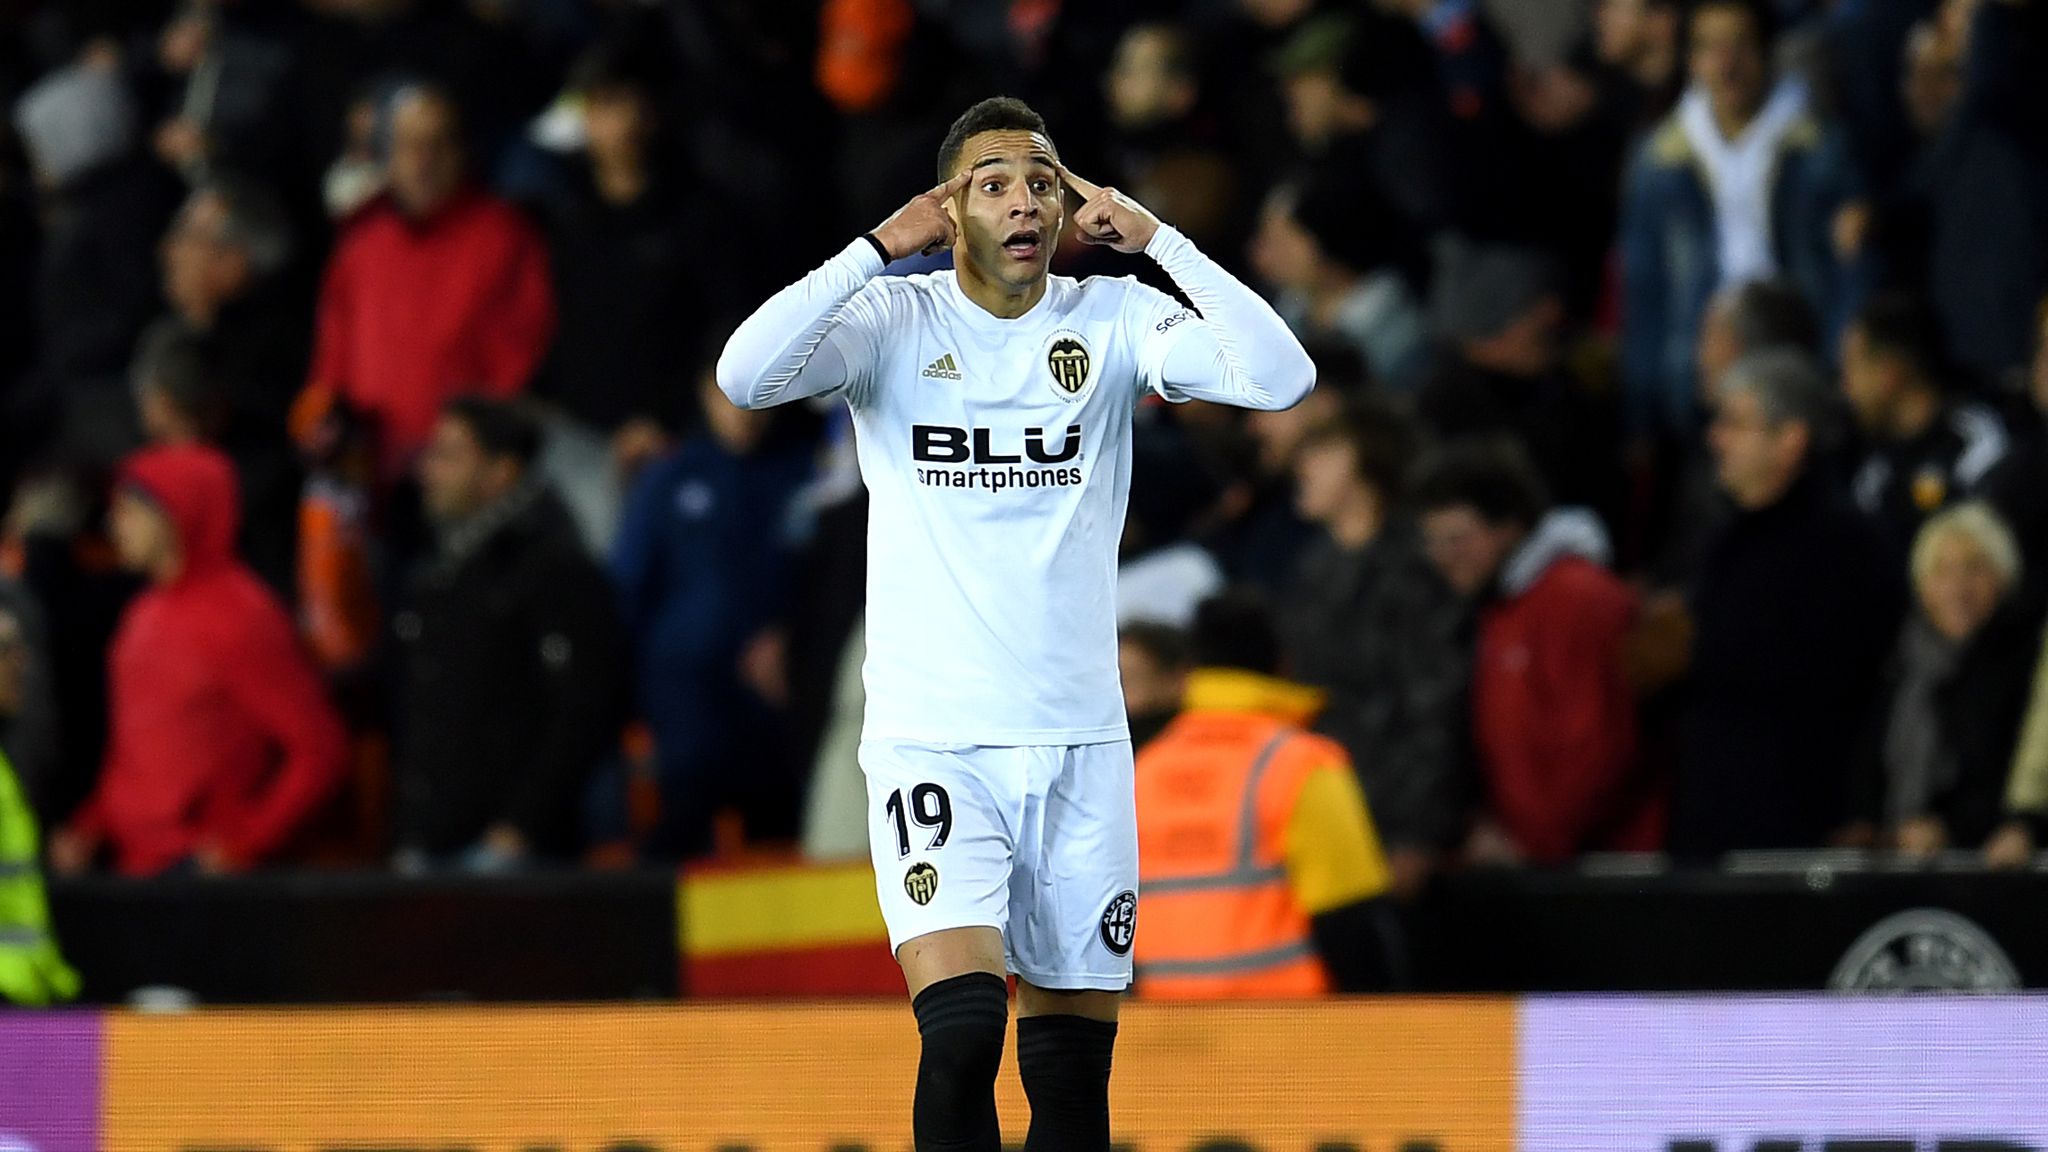 Valencia 3-1 Getafe (3-2 on agg): Rodrigo scores hat-trick as Valencia ...